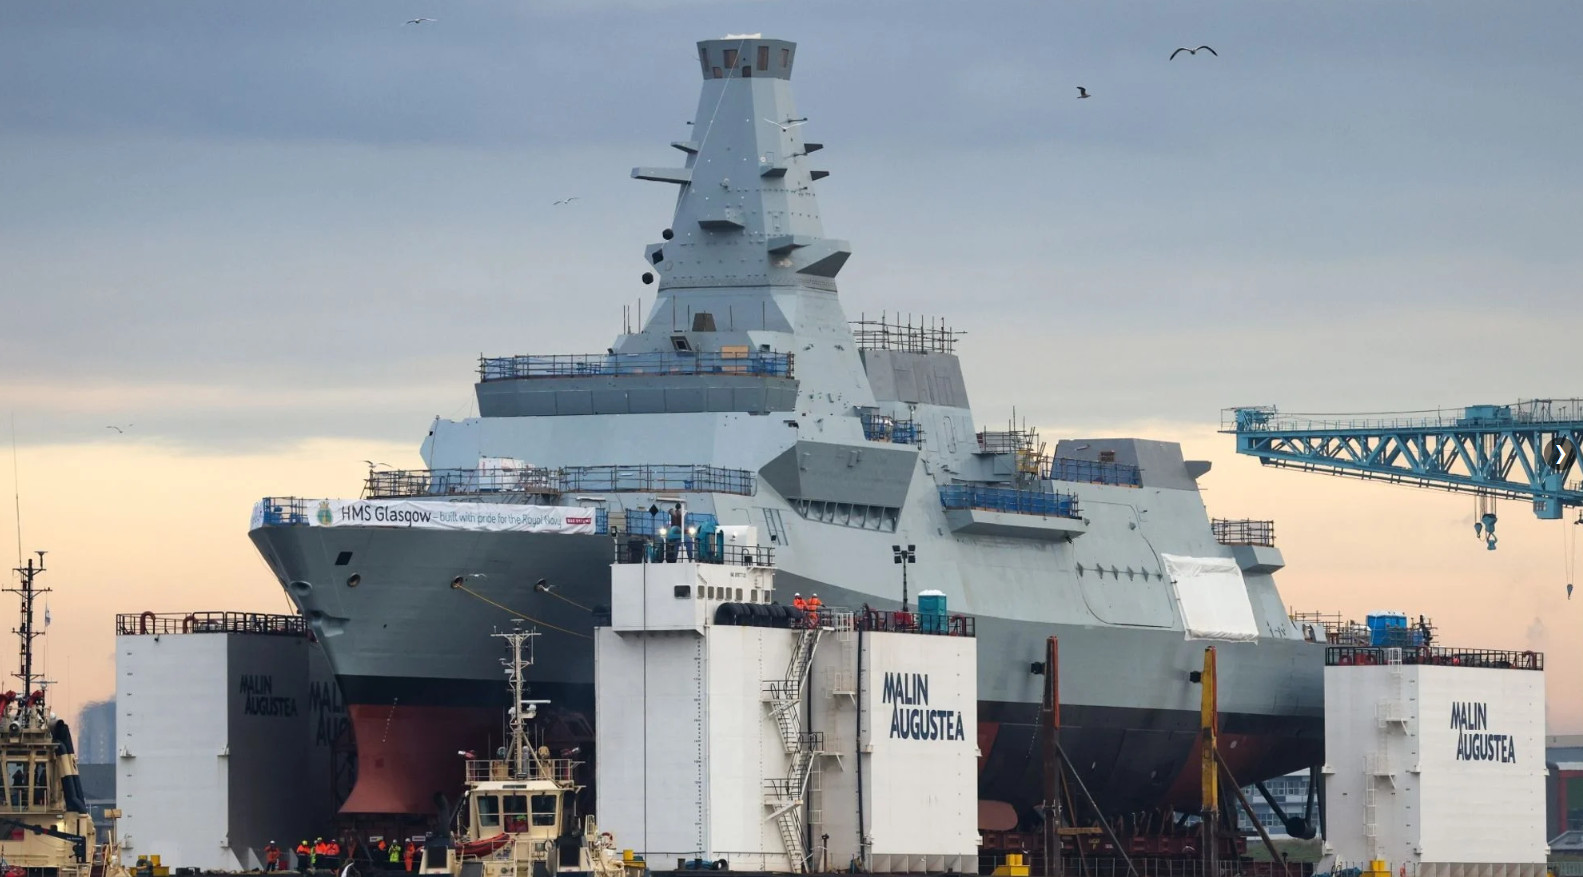 Khinh hạm HMS Glasgow của hải quân Anh vẫn đang trong giai đoạn hoàn thiện. (Ảnh: Sky News)